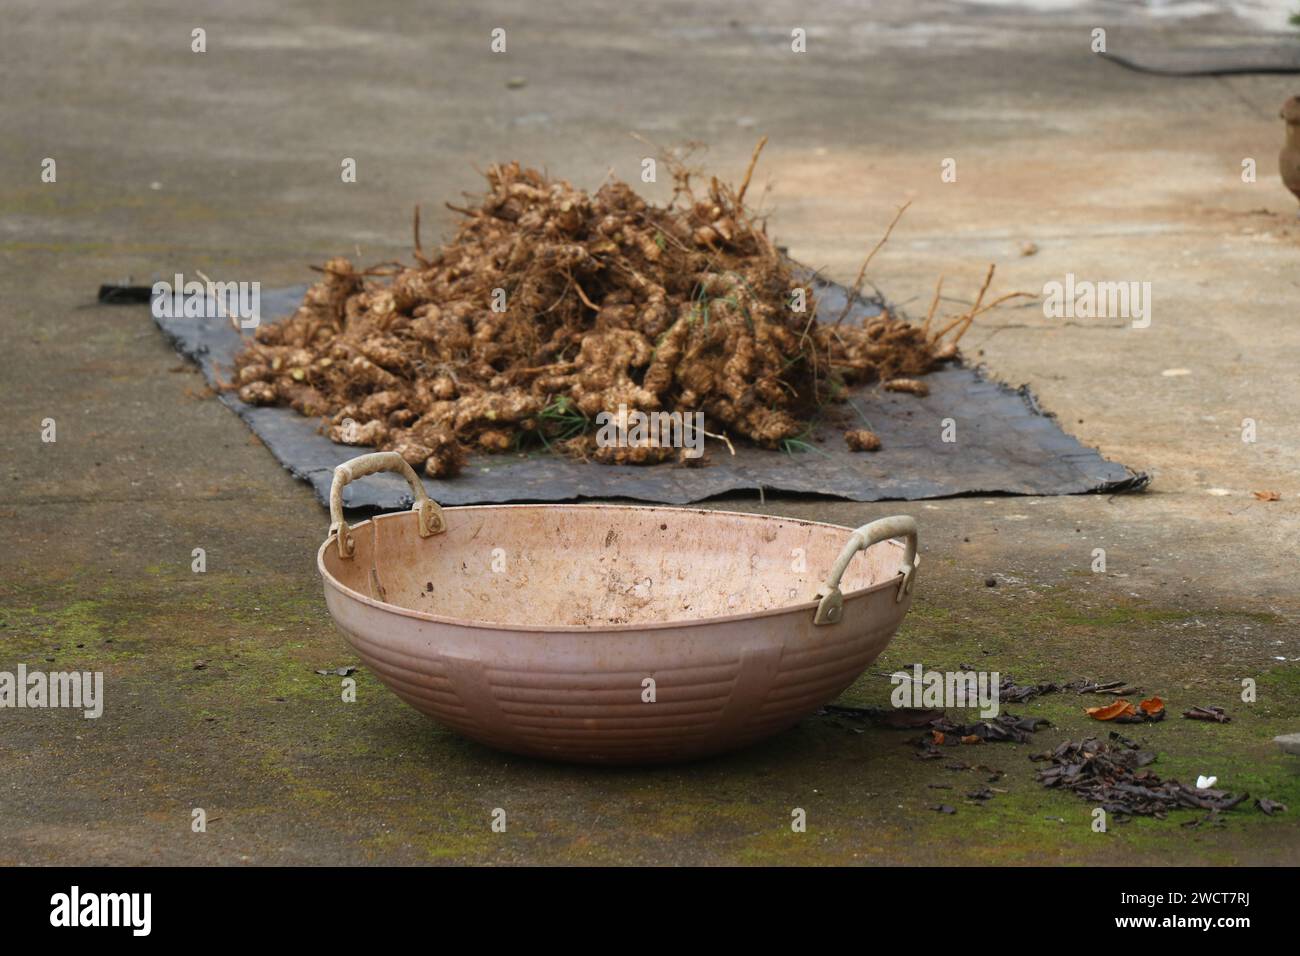 Panier vide avec des racines de gingembre fraîchement récoltées sur le fond. Le gingembre est utilisé comme ingrédient et médicament Banque D'Images